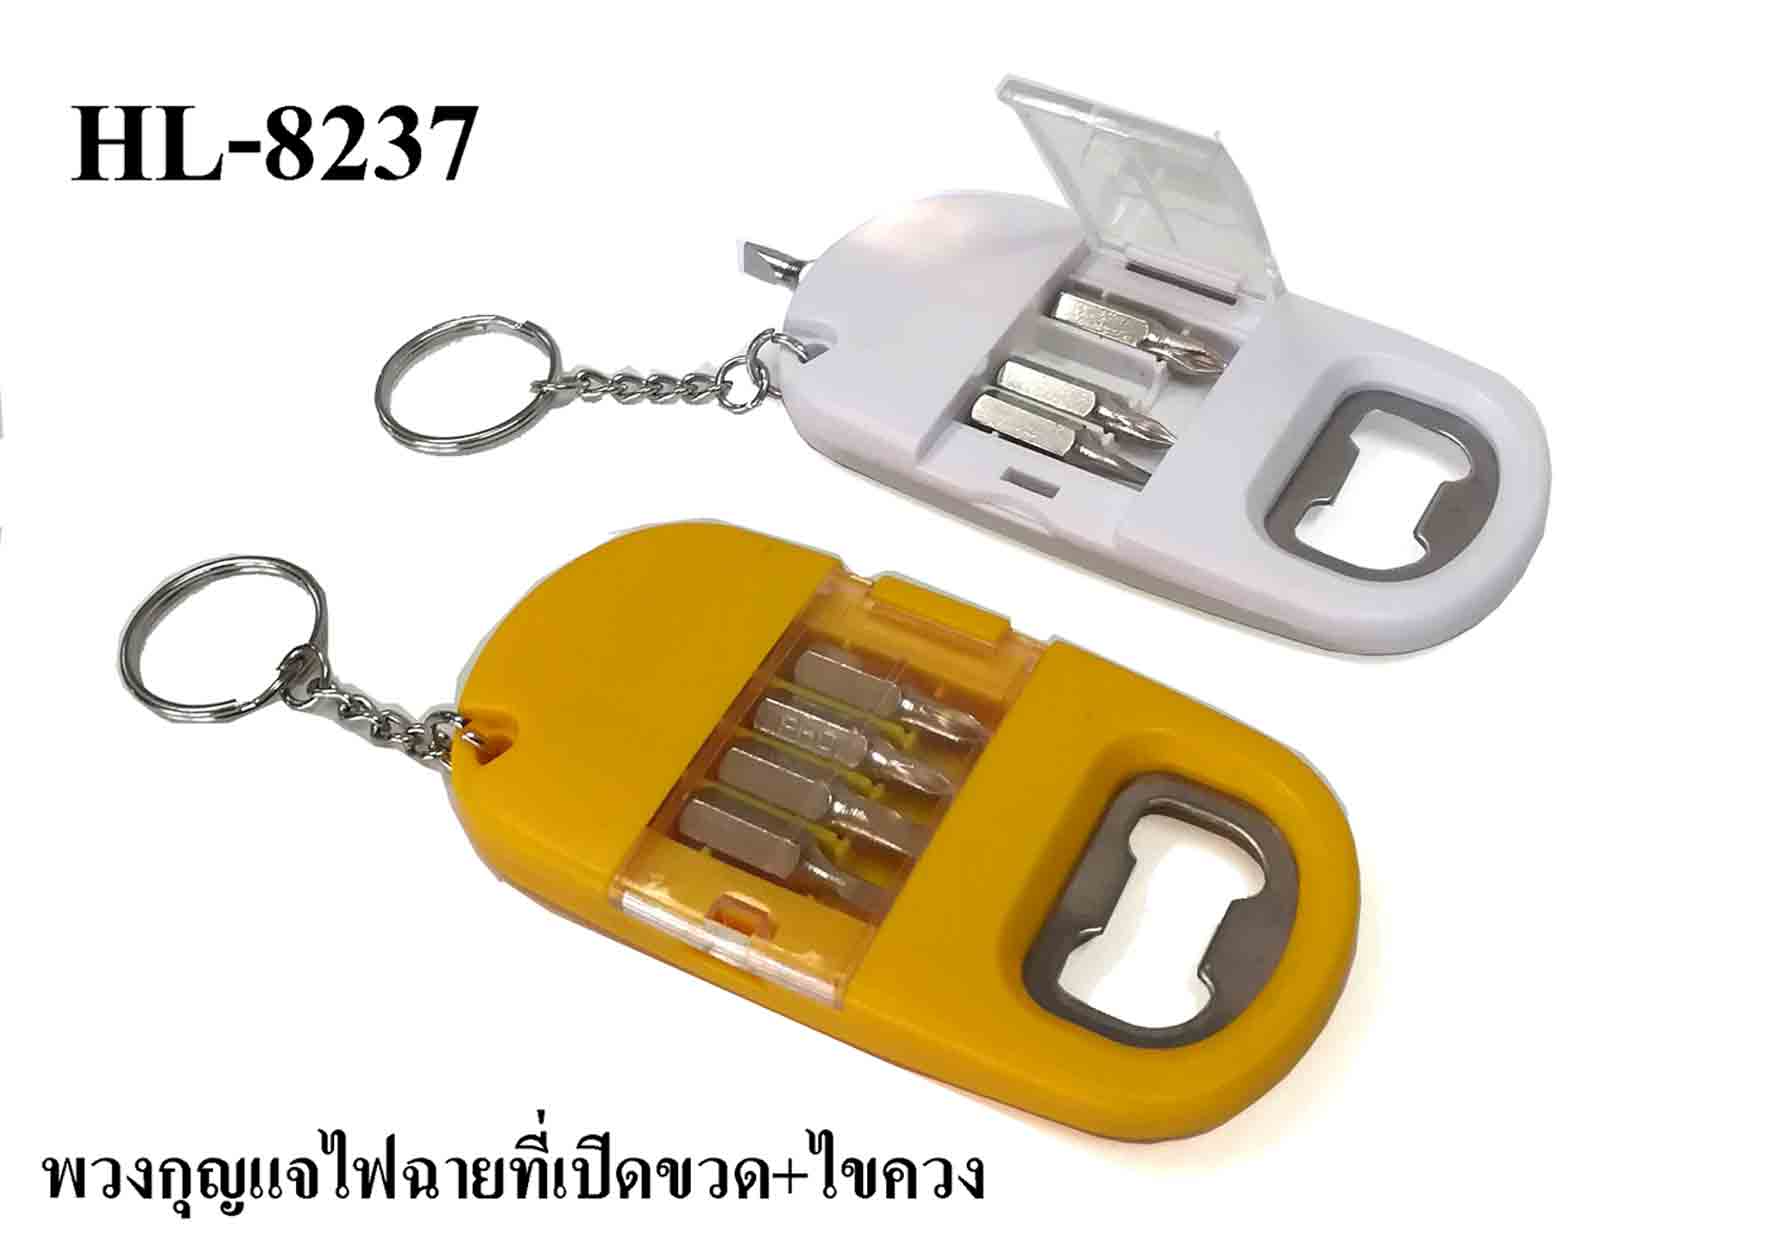 tool key holder HL-8237 พวงกุญไฟฉายที่เปิดขวดพร้อมชุดไขควง